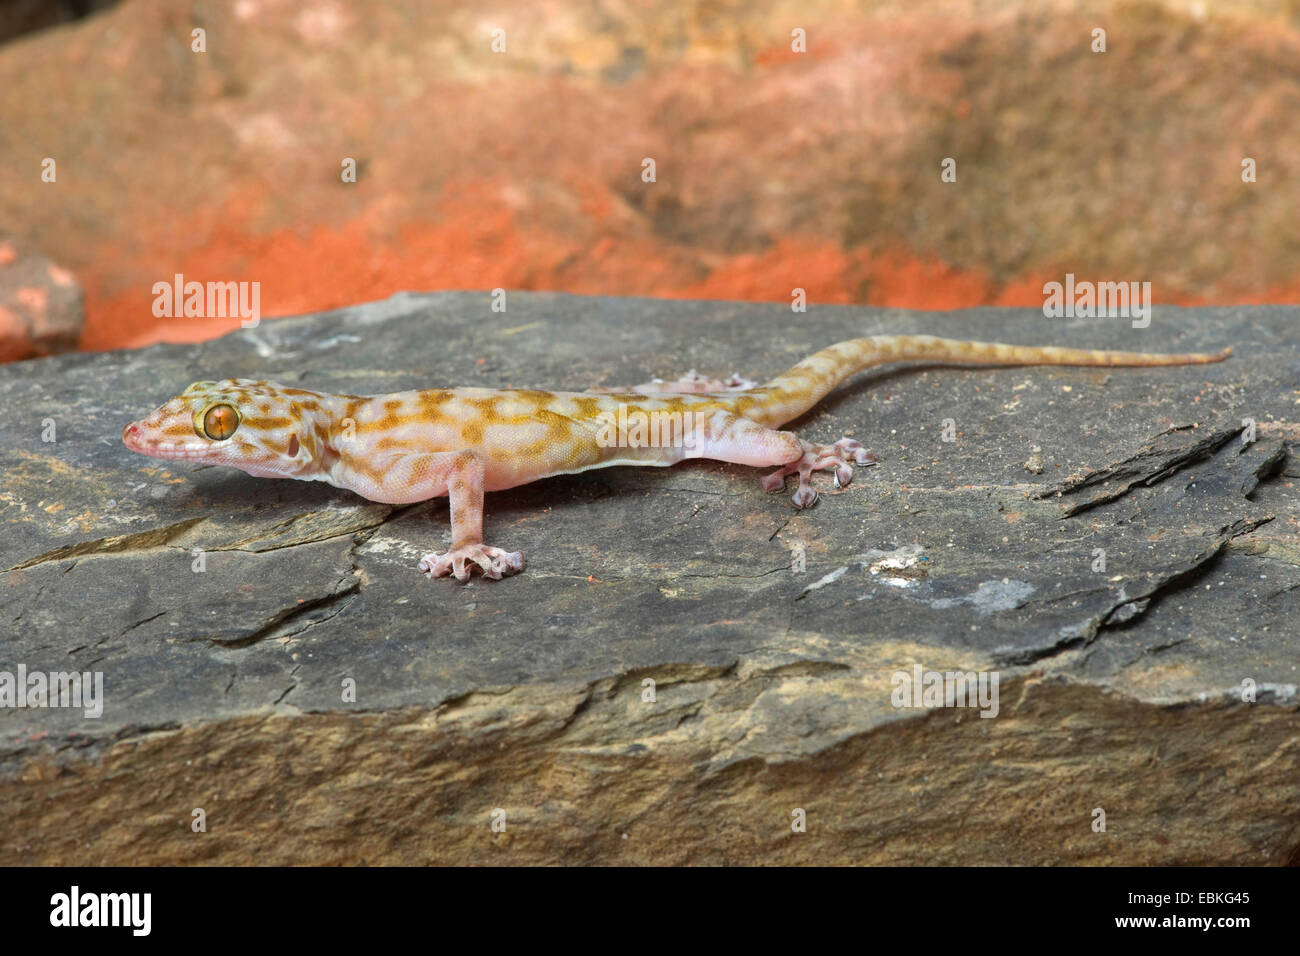 Ragazzi's fan-footed gecko, Fan-toed gecko, Yellow fan-fingered gecko (Ptyodactylus ragazzii), on a stone Stock Photo